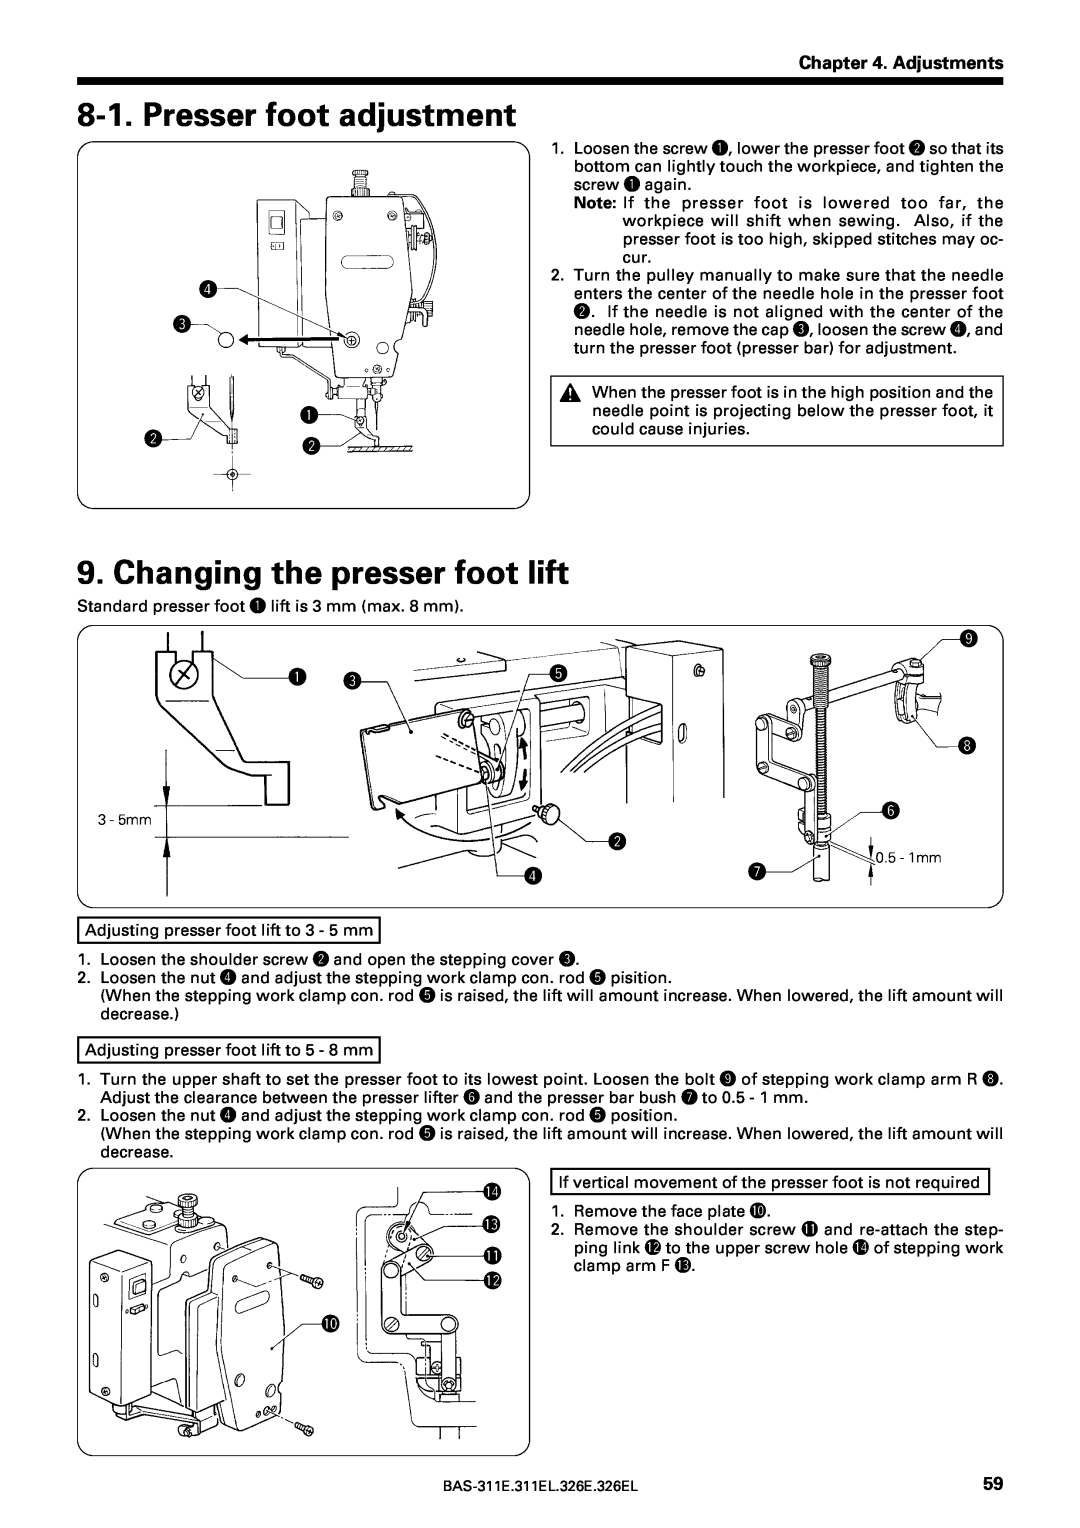 Brother BAS-311E service manual Presser foot adjustment, Changing the presser foot lift, Adjustments, r e q w w, q e 